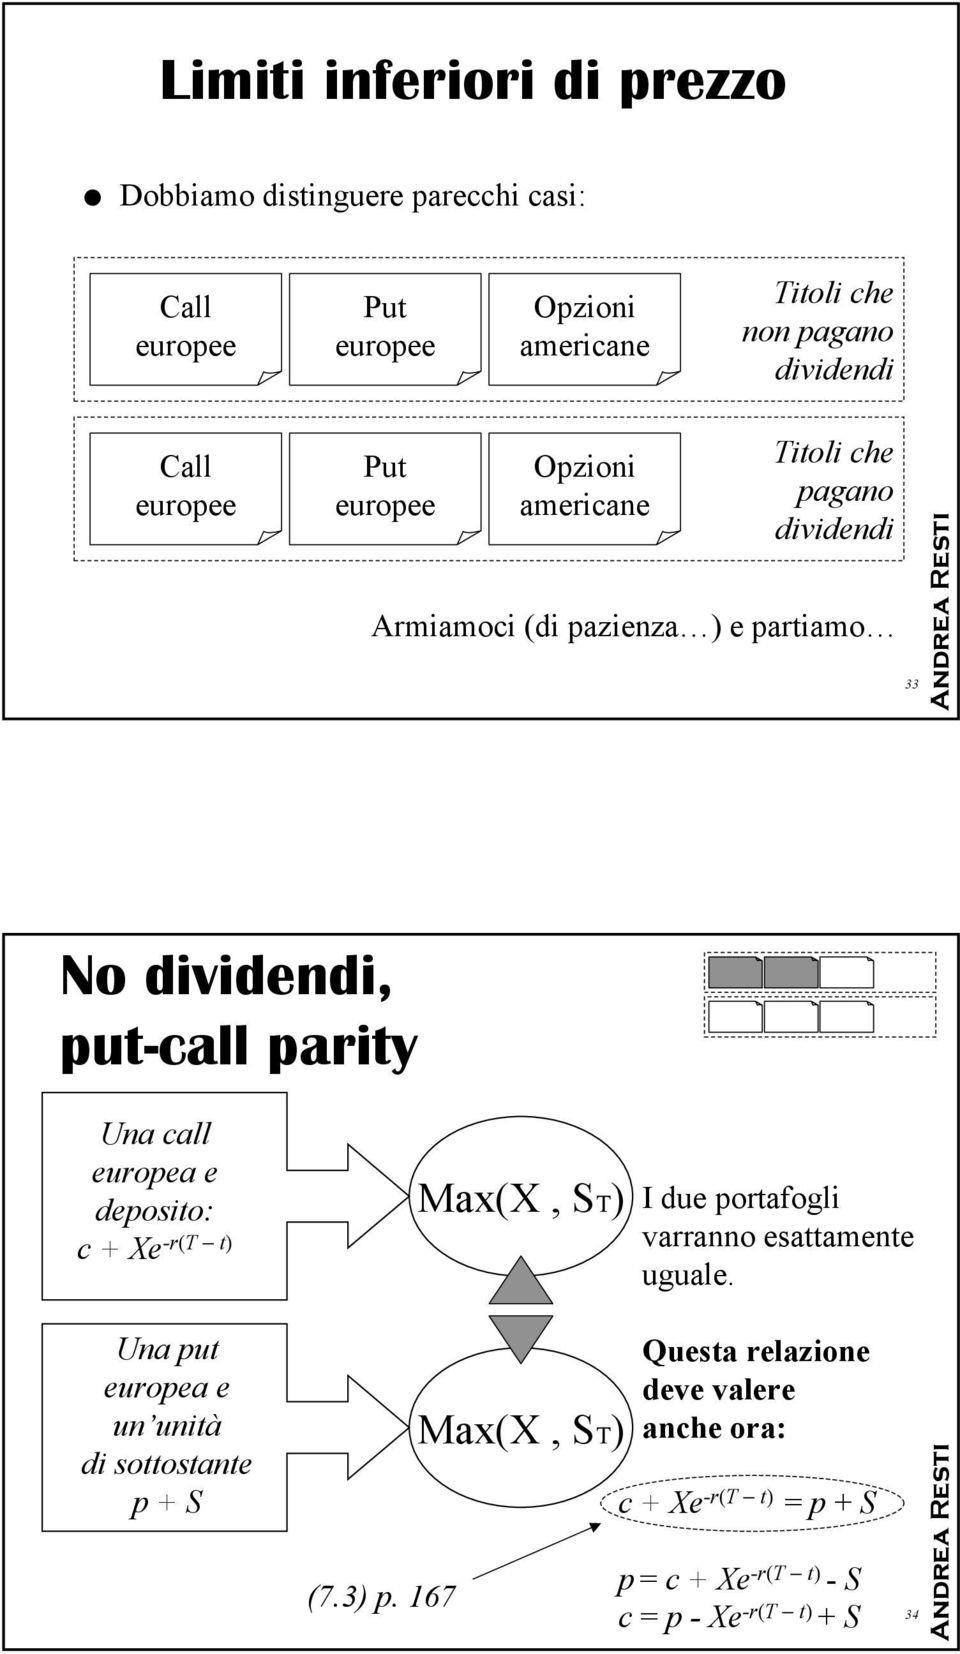 parity Una call europea e deposito: c + e-r(t t) Max(, ST) I due portafogli varranno esattamente uguale.